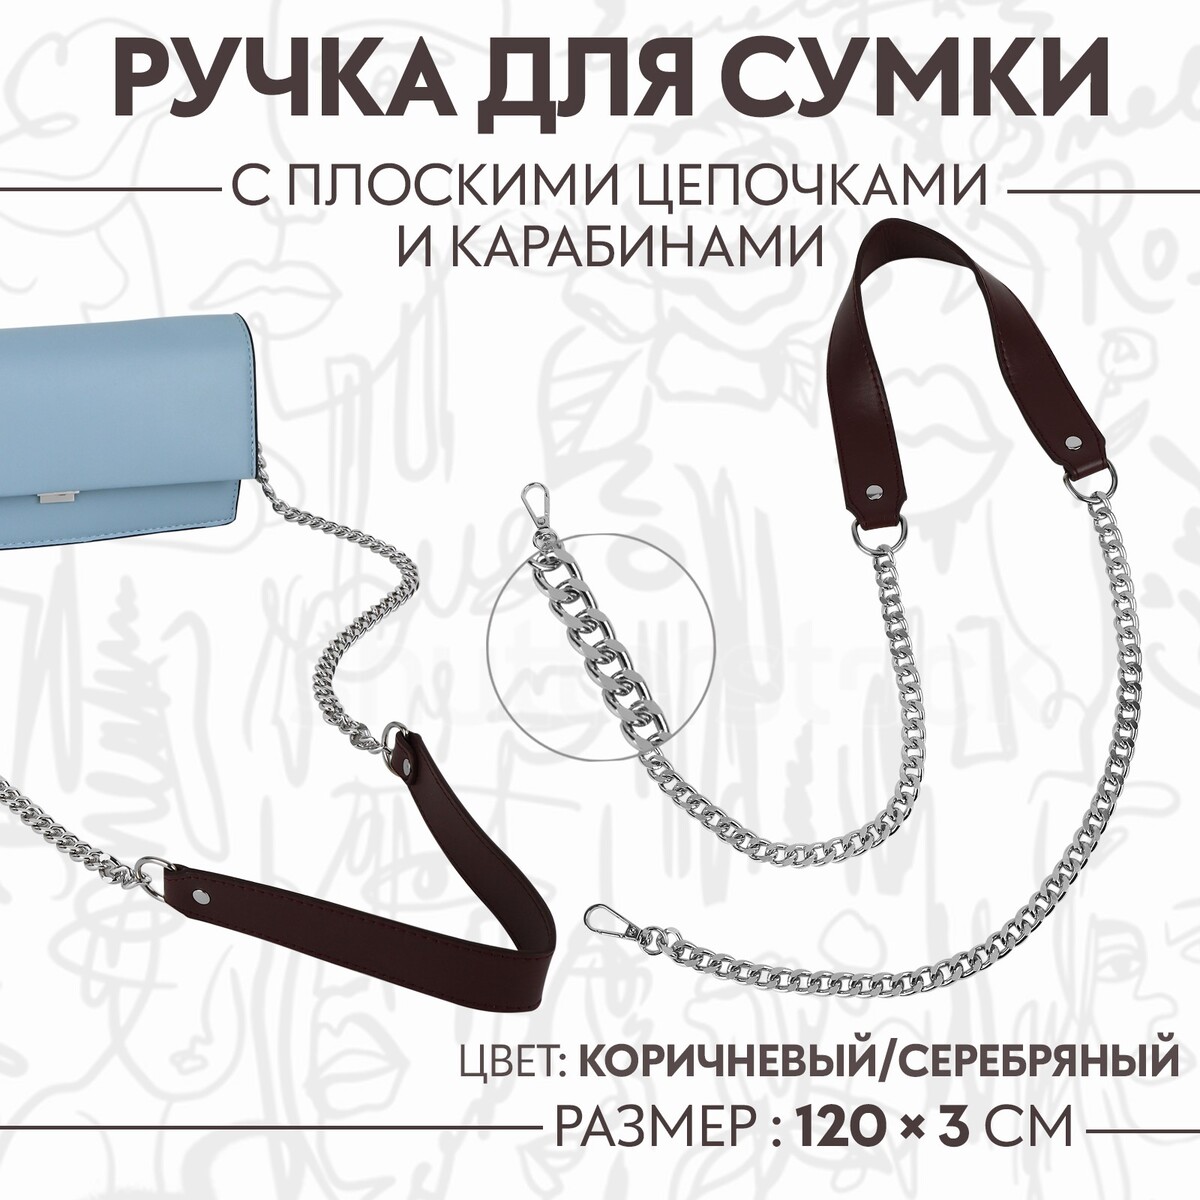 Ручка для сумки, с плоскими цепочками и карабинами, 120 × 3 см, цвет коричневый/серебряный ручка для сумки с плоскими цепочками и карабинами 120 × 3 см серебряный